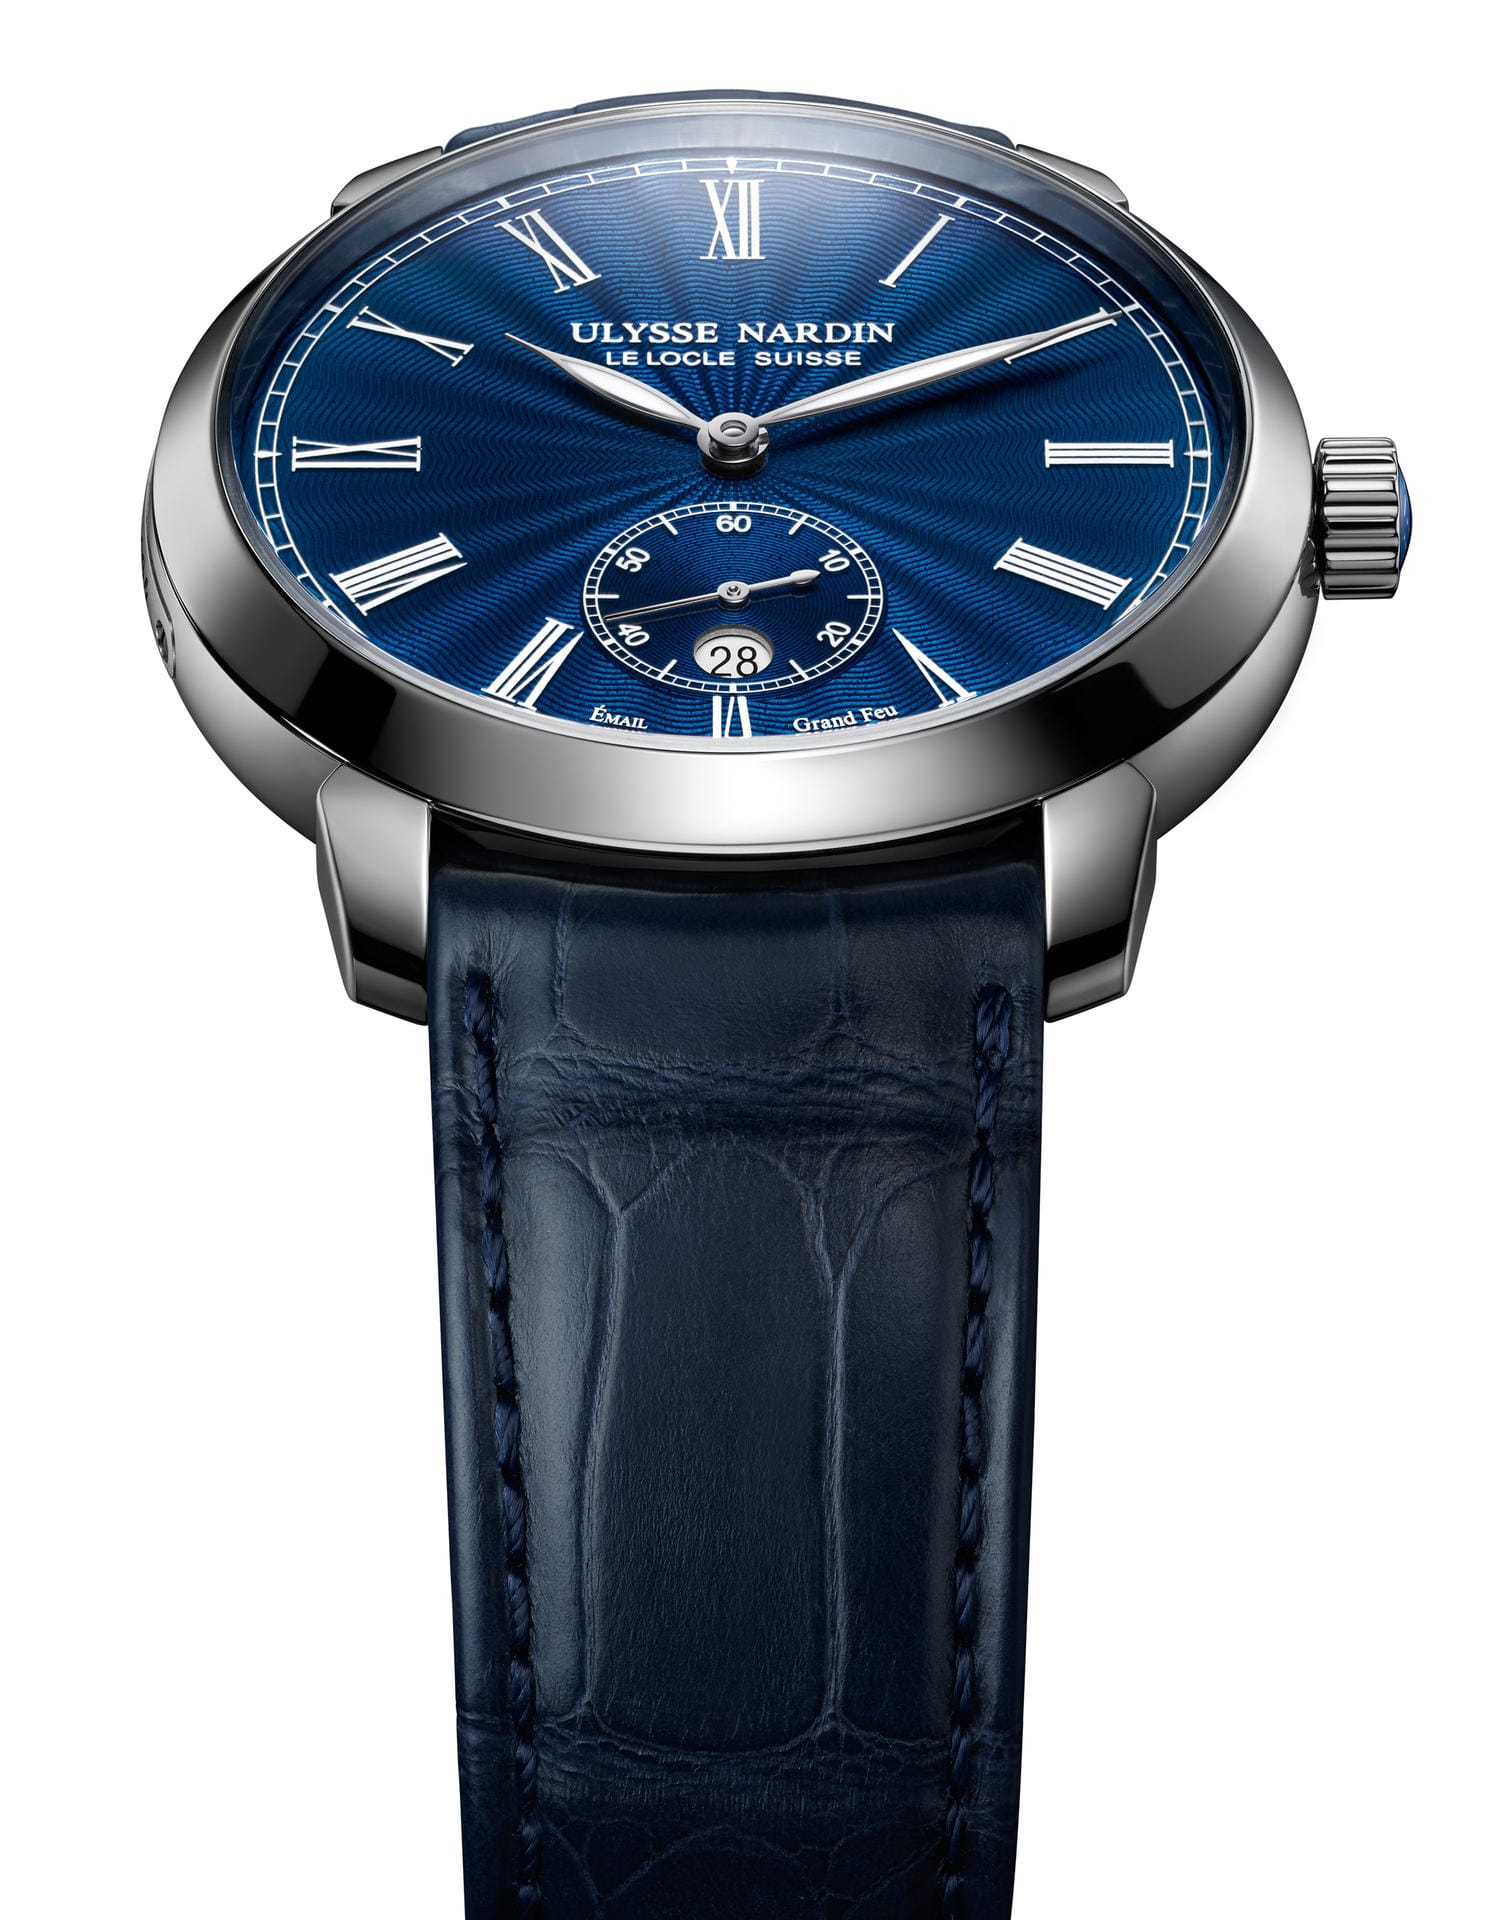 Eine attraktive Uhr in der Preisklasse unter 10.000 Euro ist die Ulysse Nardin Classico Manufacture Grand Feu.